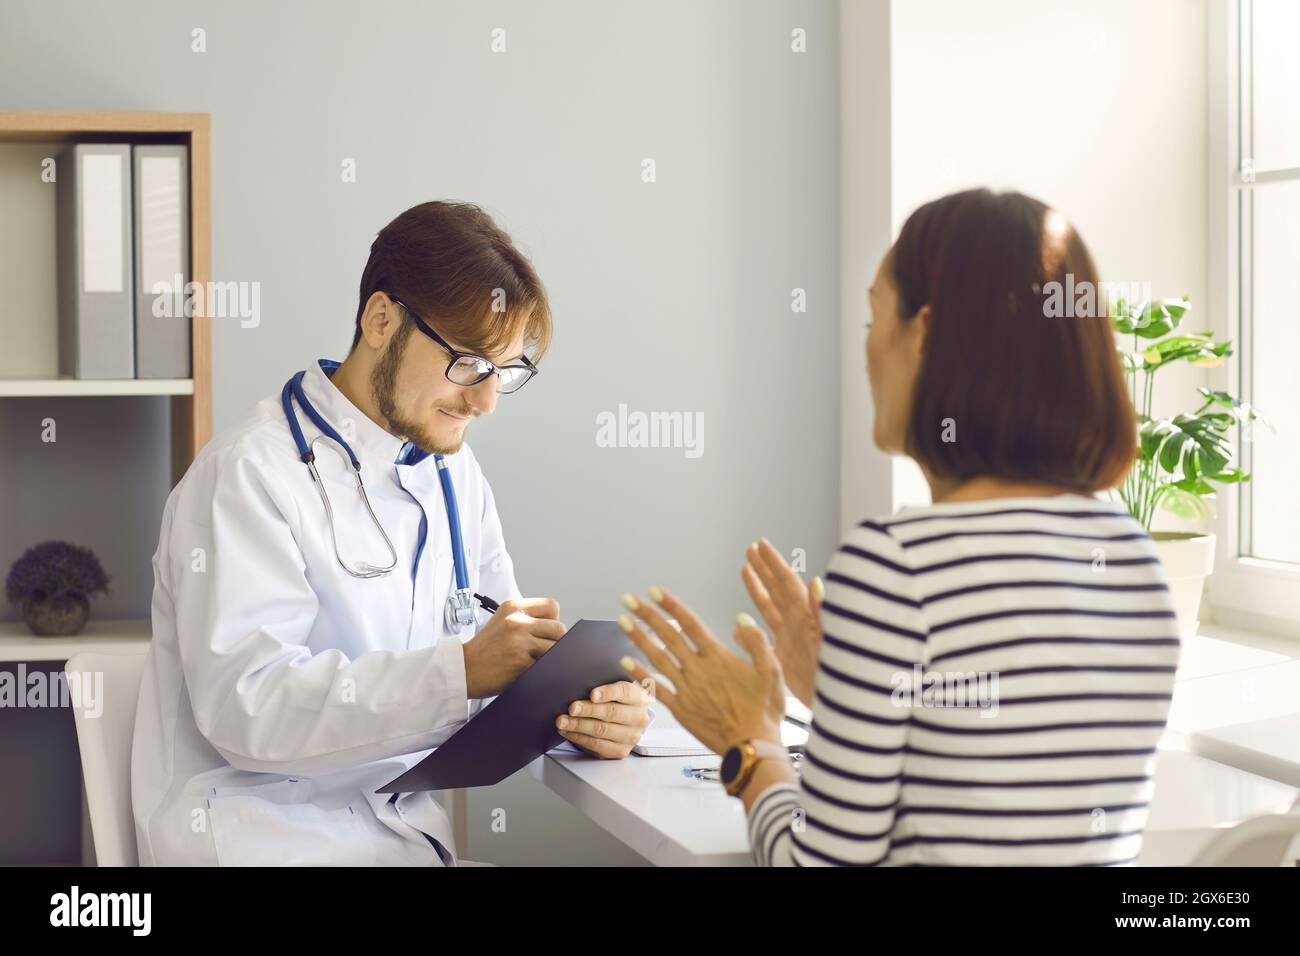 Männlicher Arzt schreibt bei der ärztlichen Untersuchung ein Rezept oder macht Notizen in der Patientenkarte. Stockfoto